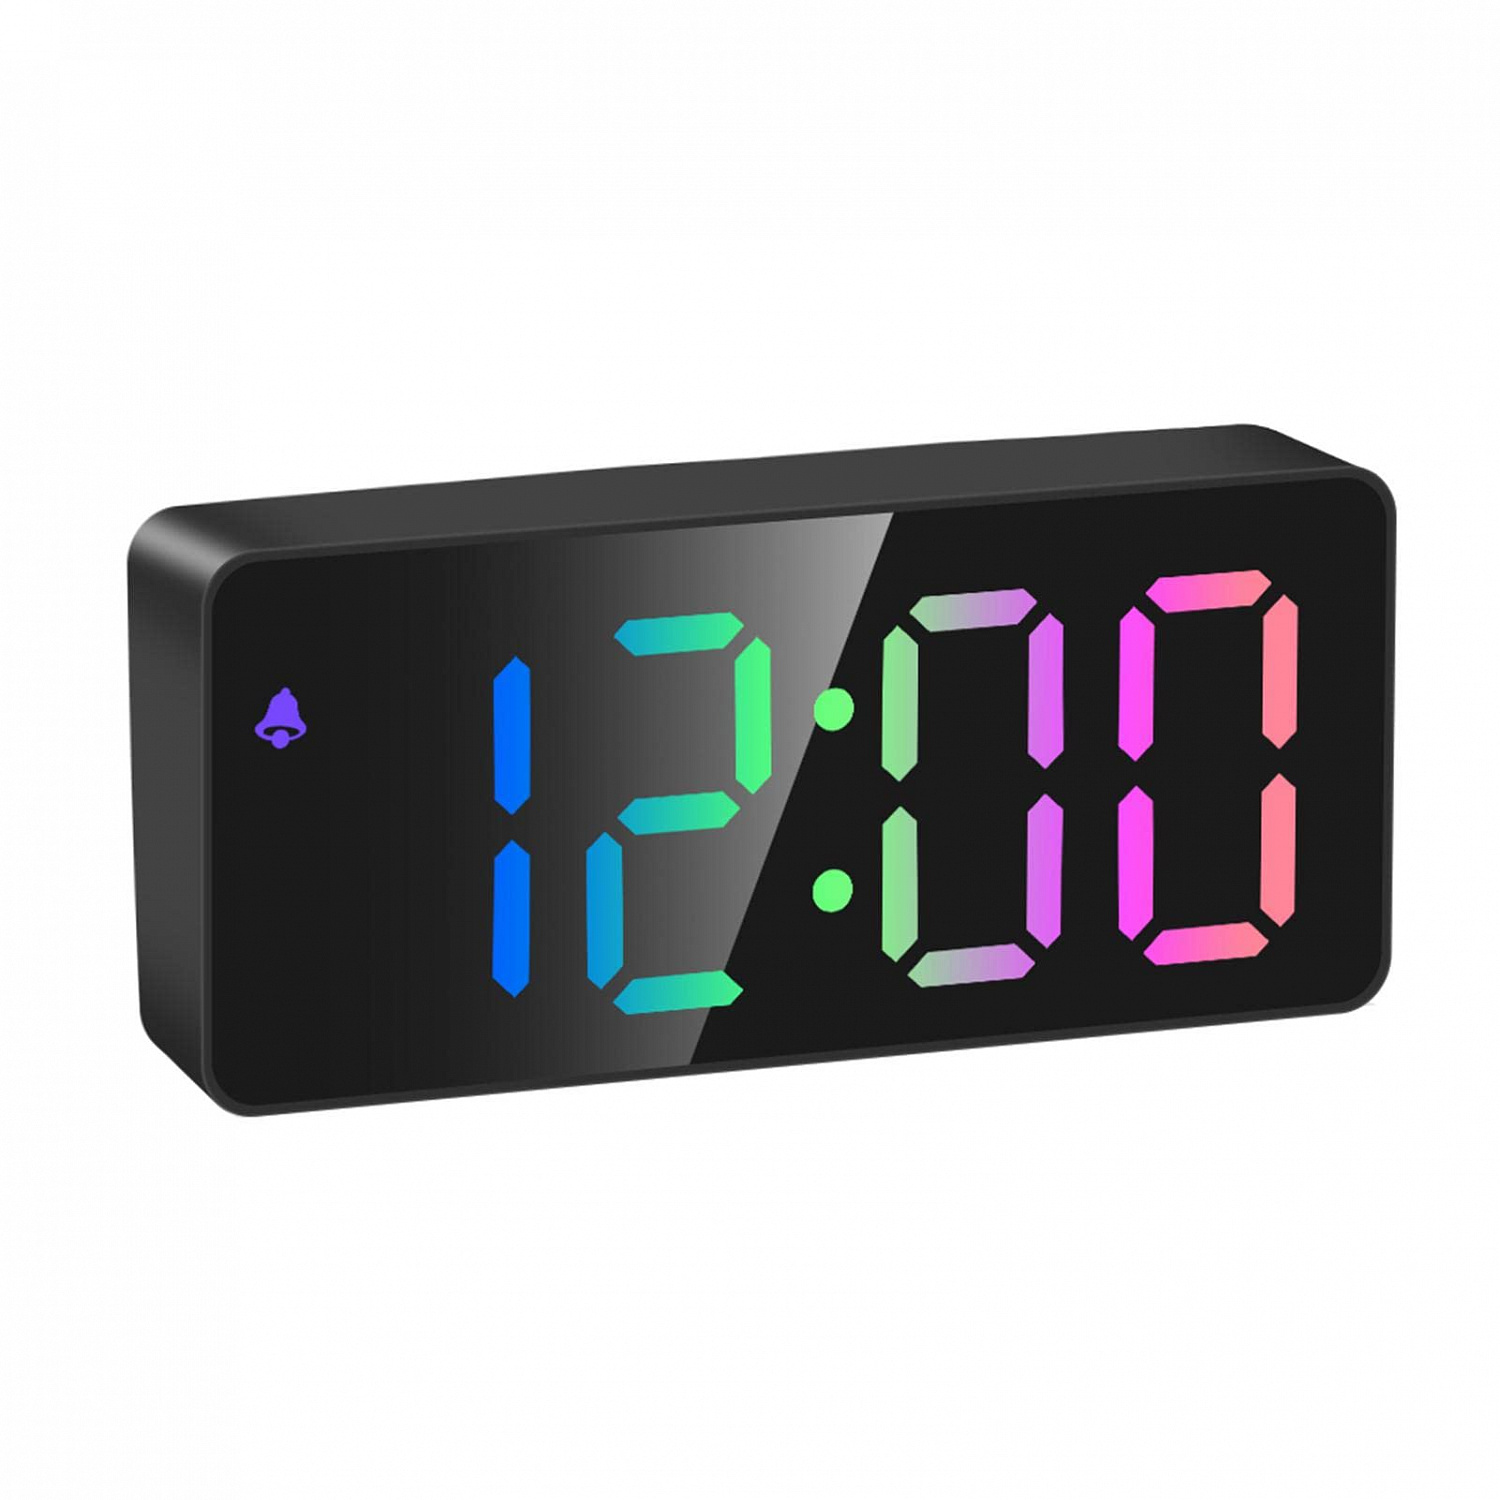 Часы настольные  OT-CLT09 Чёрные RGB дисплей (будильник, температура, дата)